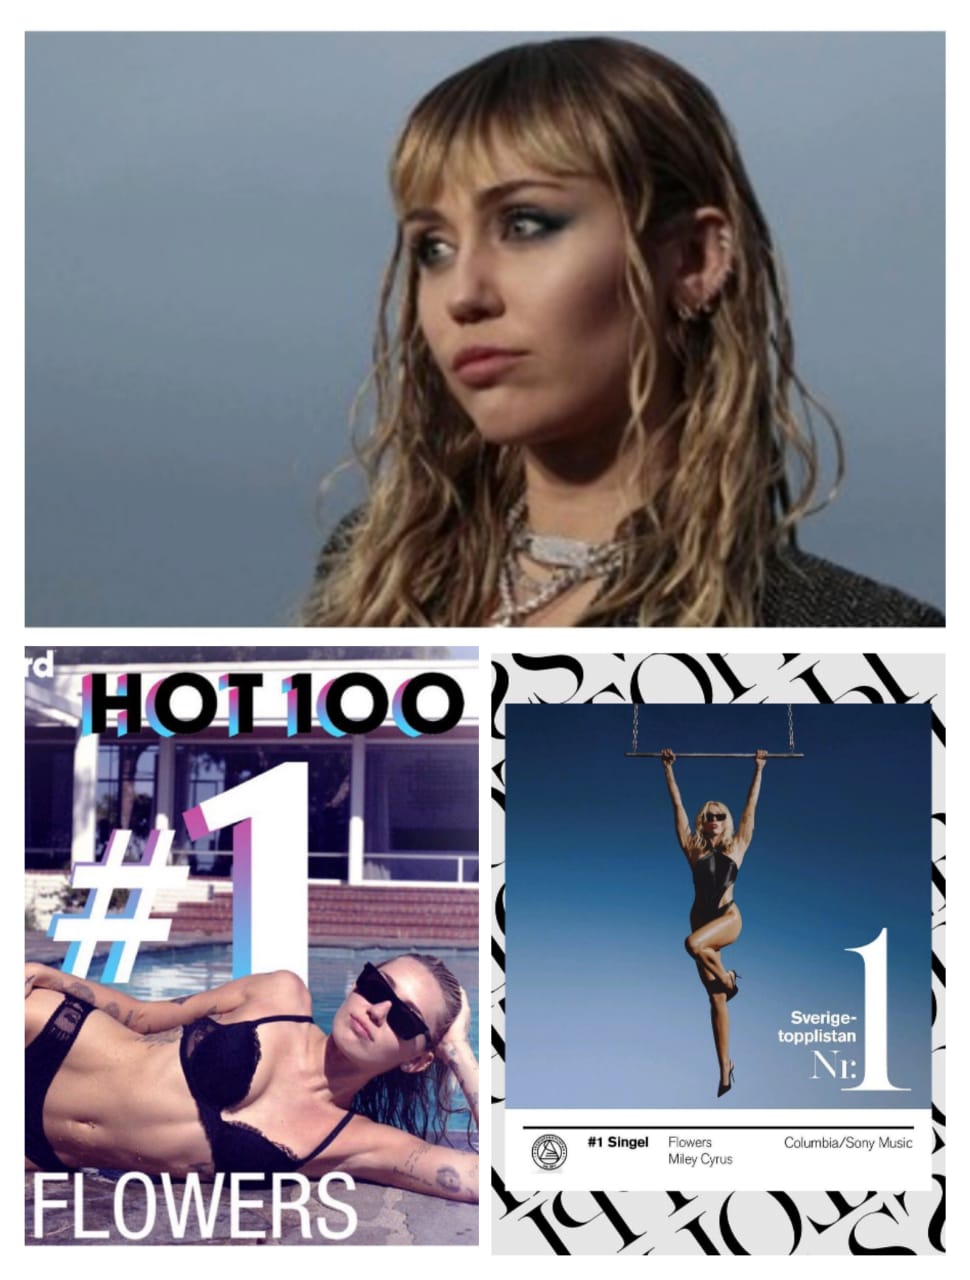 Fakta Lagu 'Flowers' Milik Miley Cyrus , Setelah Sukses diposisi Pertama Billboard Hot 100